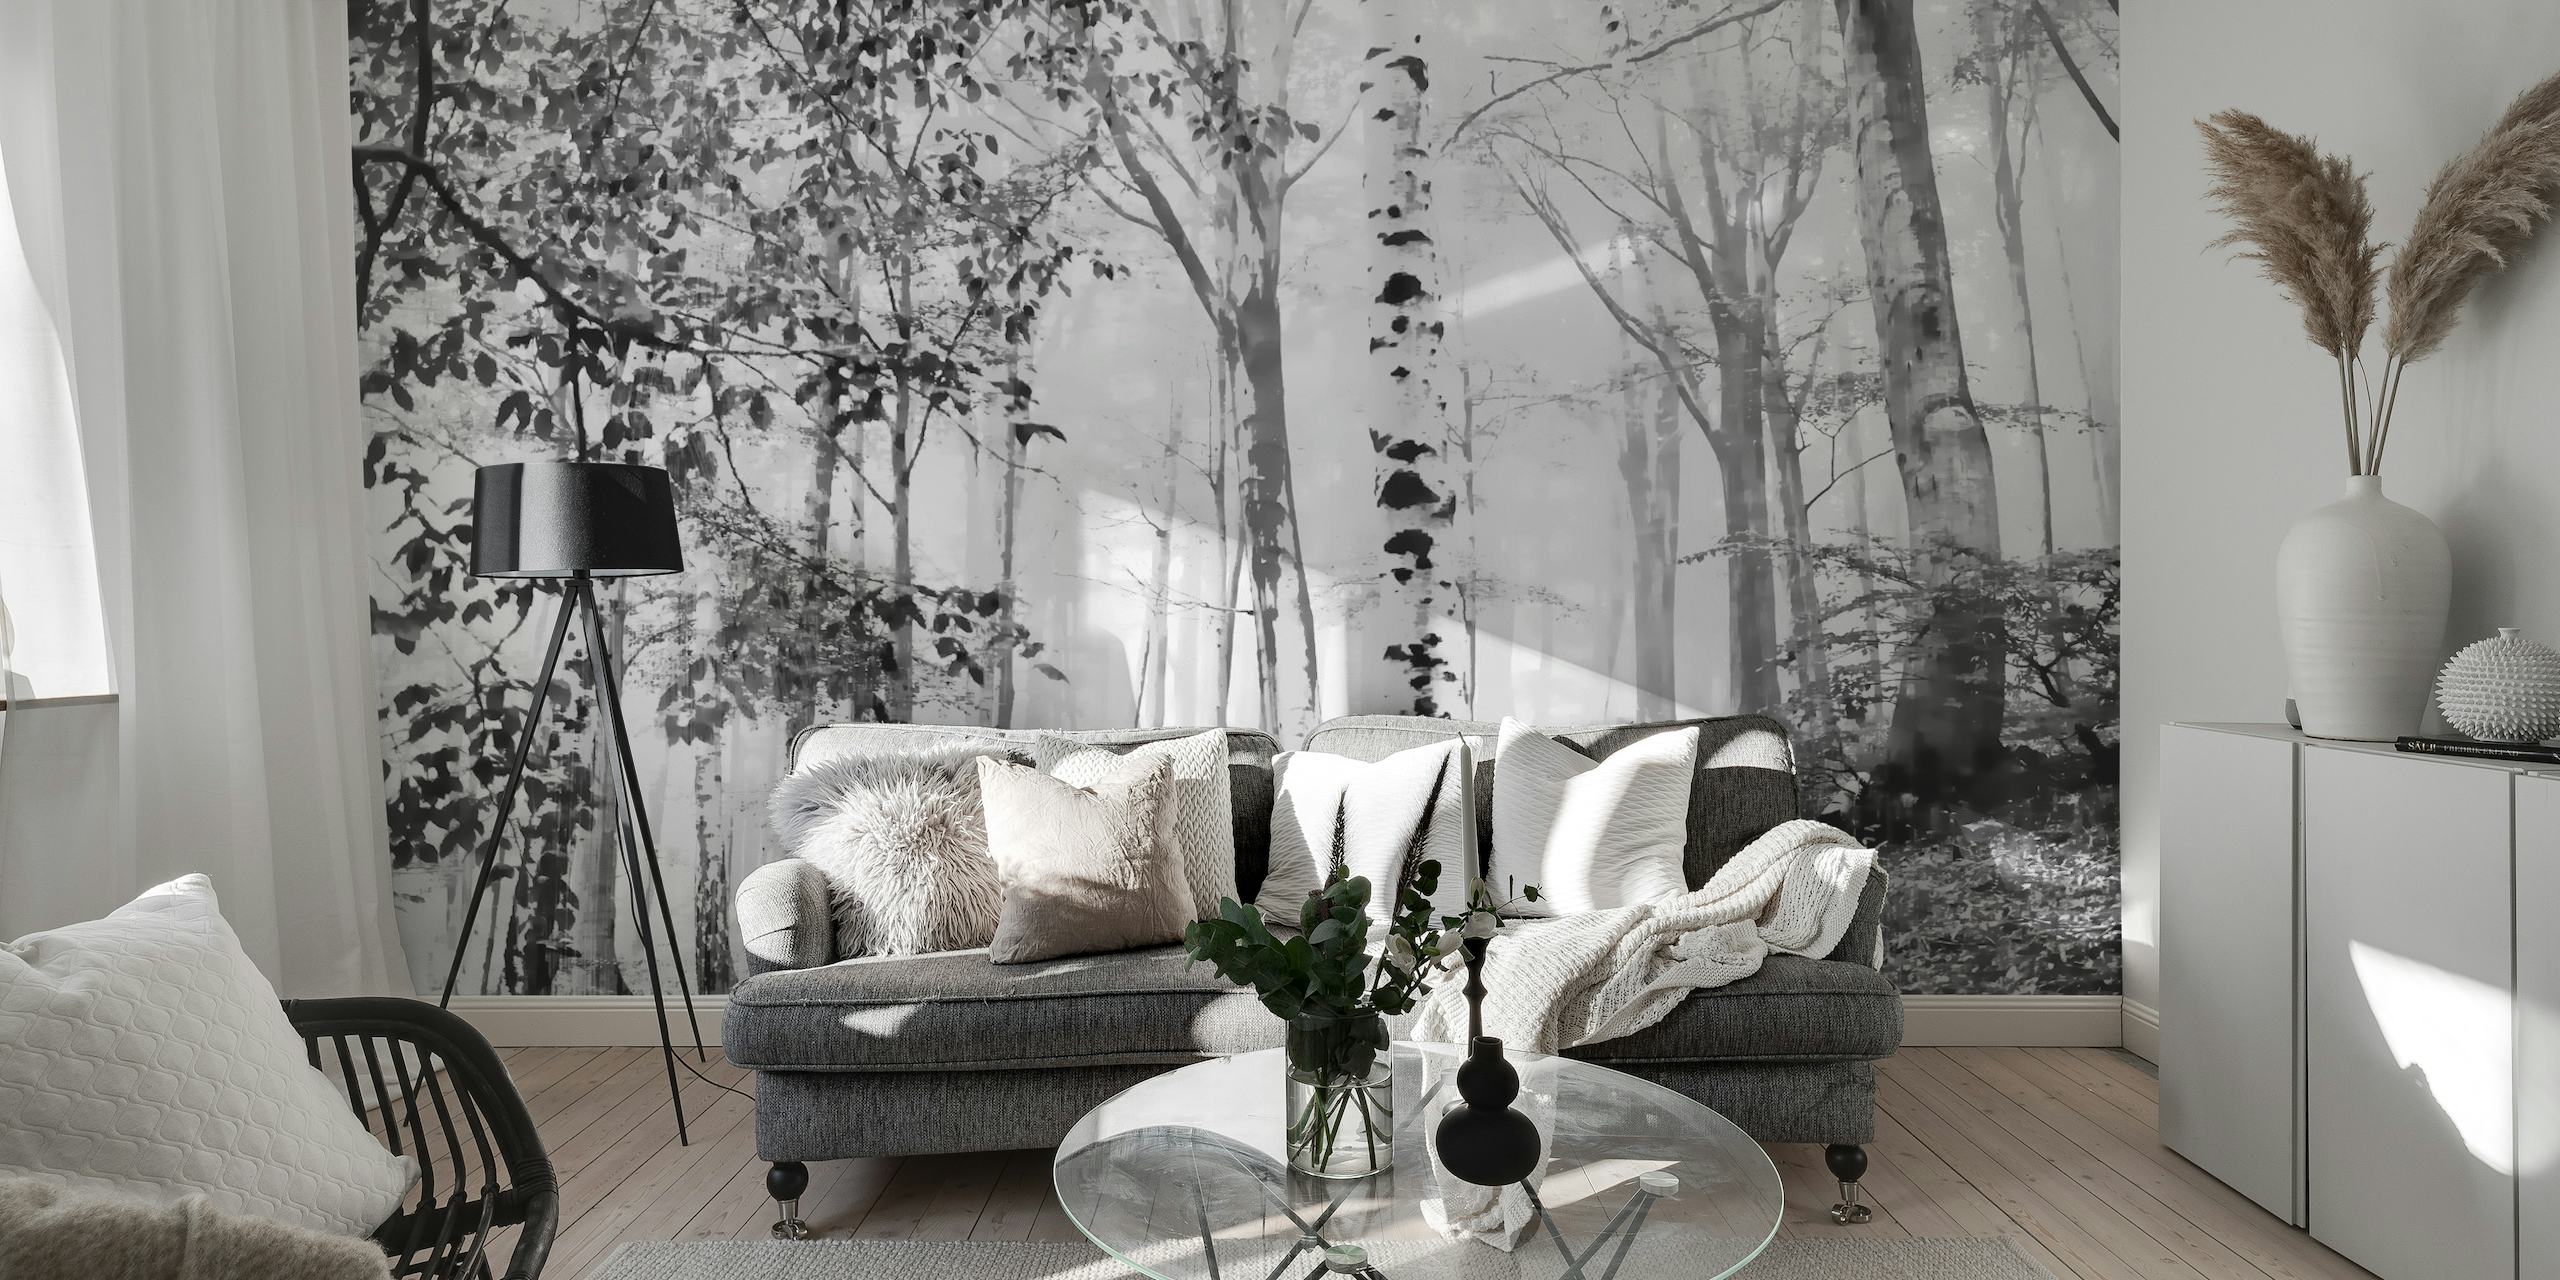 Tåkete bjørkeskog-veggmaleri i svart og hvitt, skaper en rolig skogscene for interiør